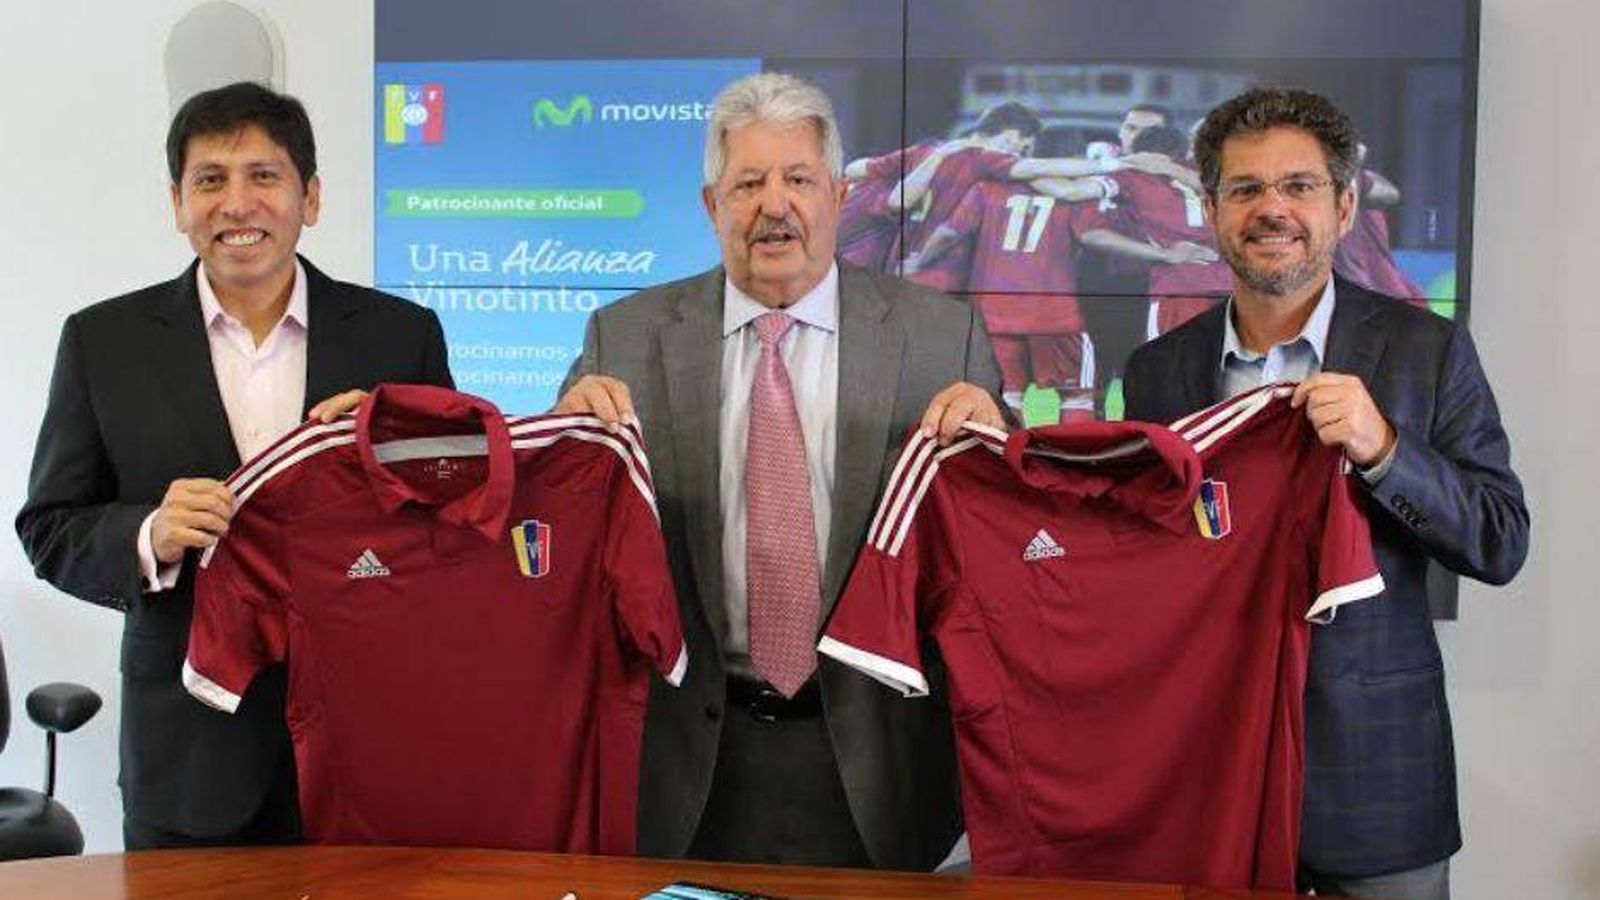 Foto: Pedro Cortez, presidente de Telefónica Venezuela; Rafael Esquivel, presidente de la Federación venezolana de Fútbol, y Renán Leal, vicepresidente de Planificación de Movistar. 